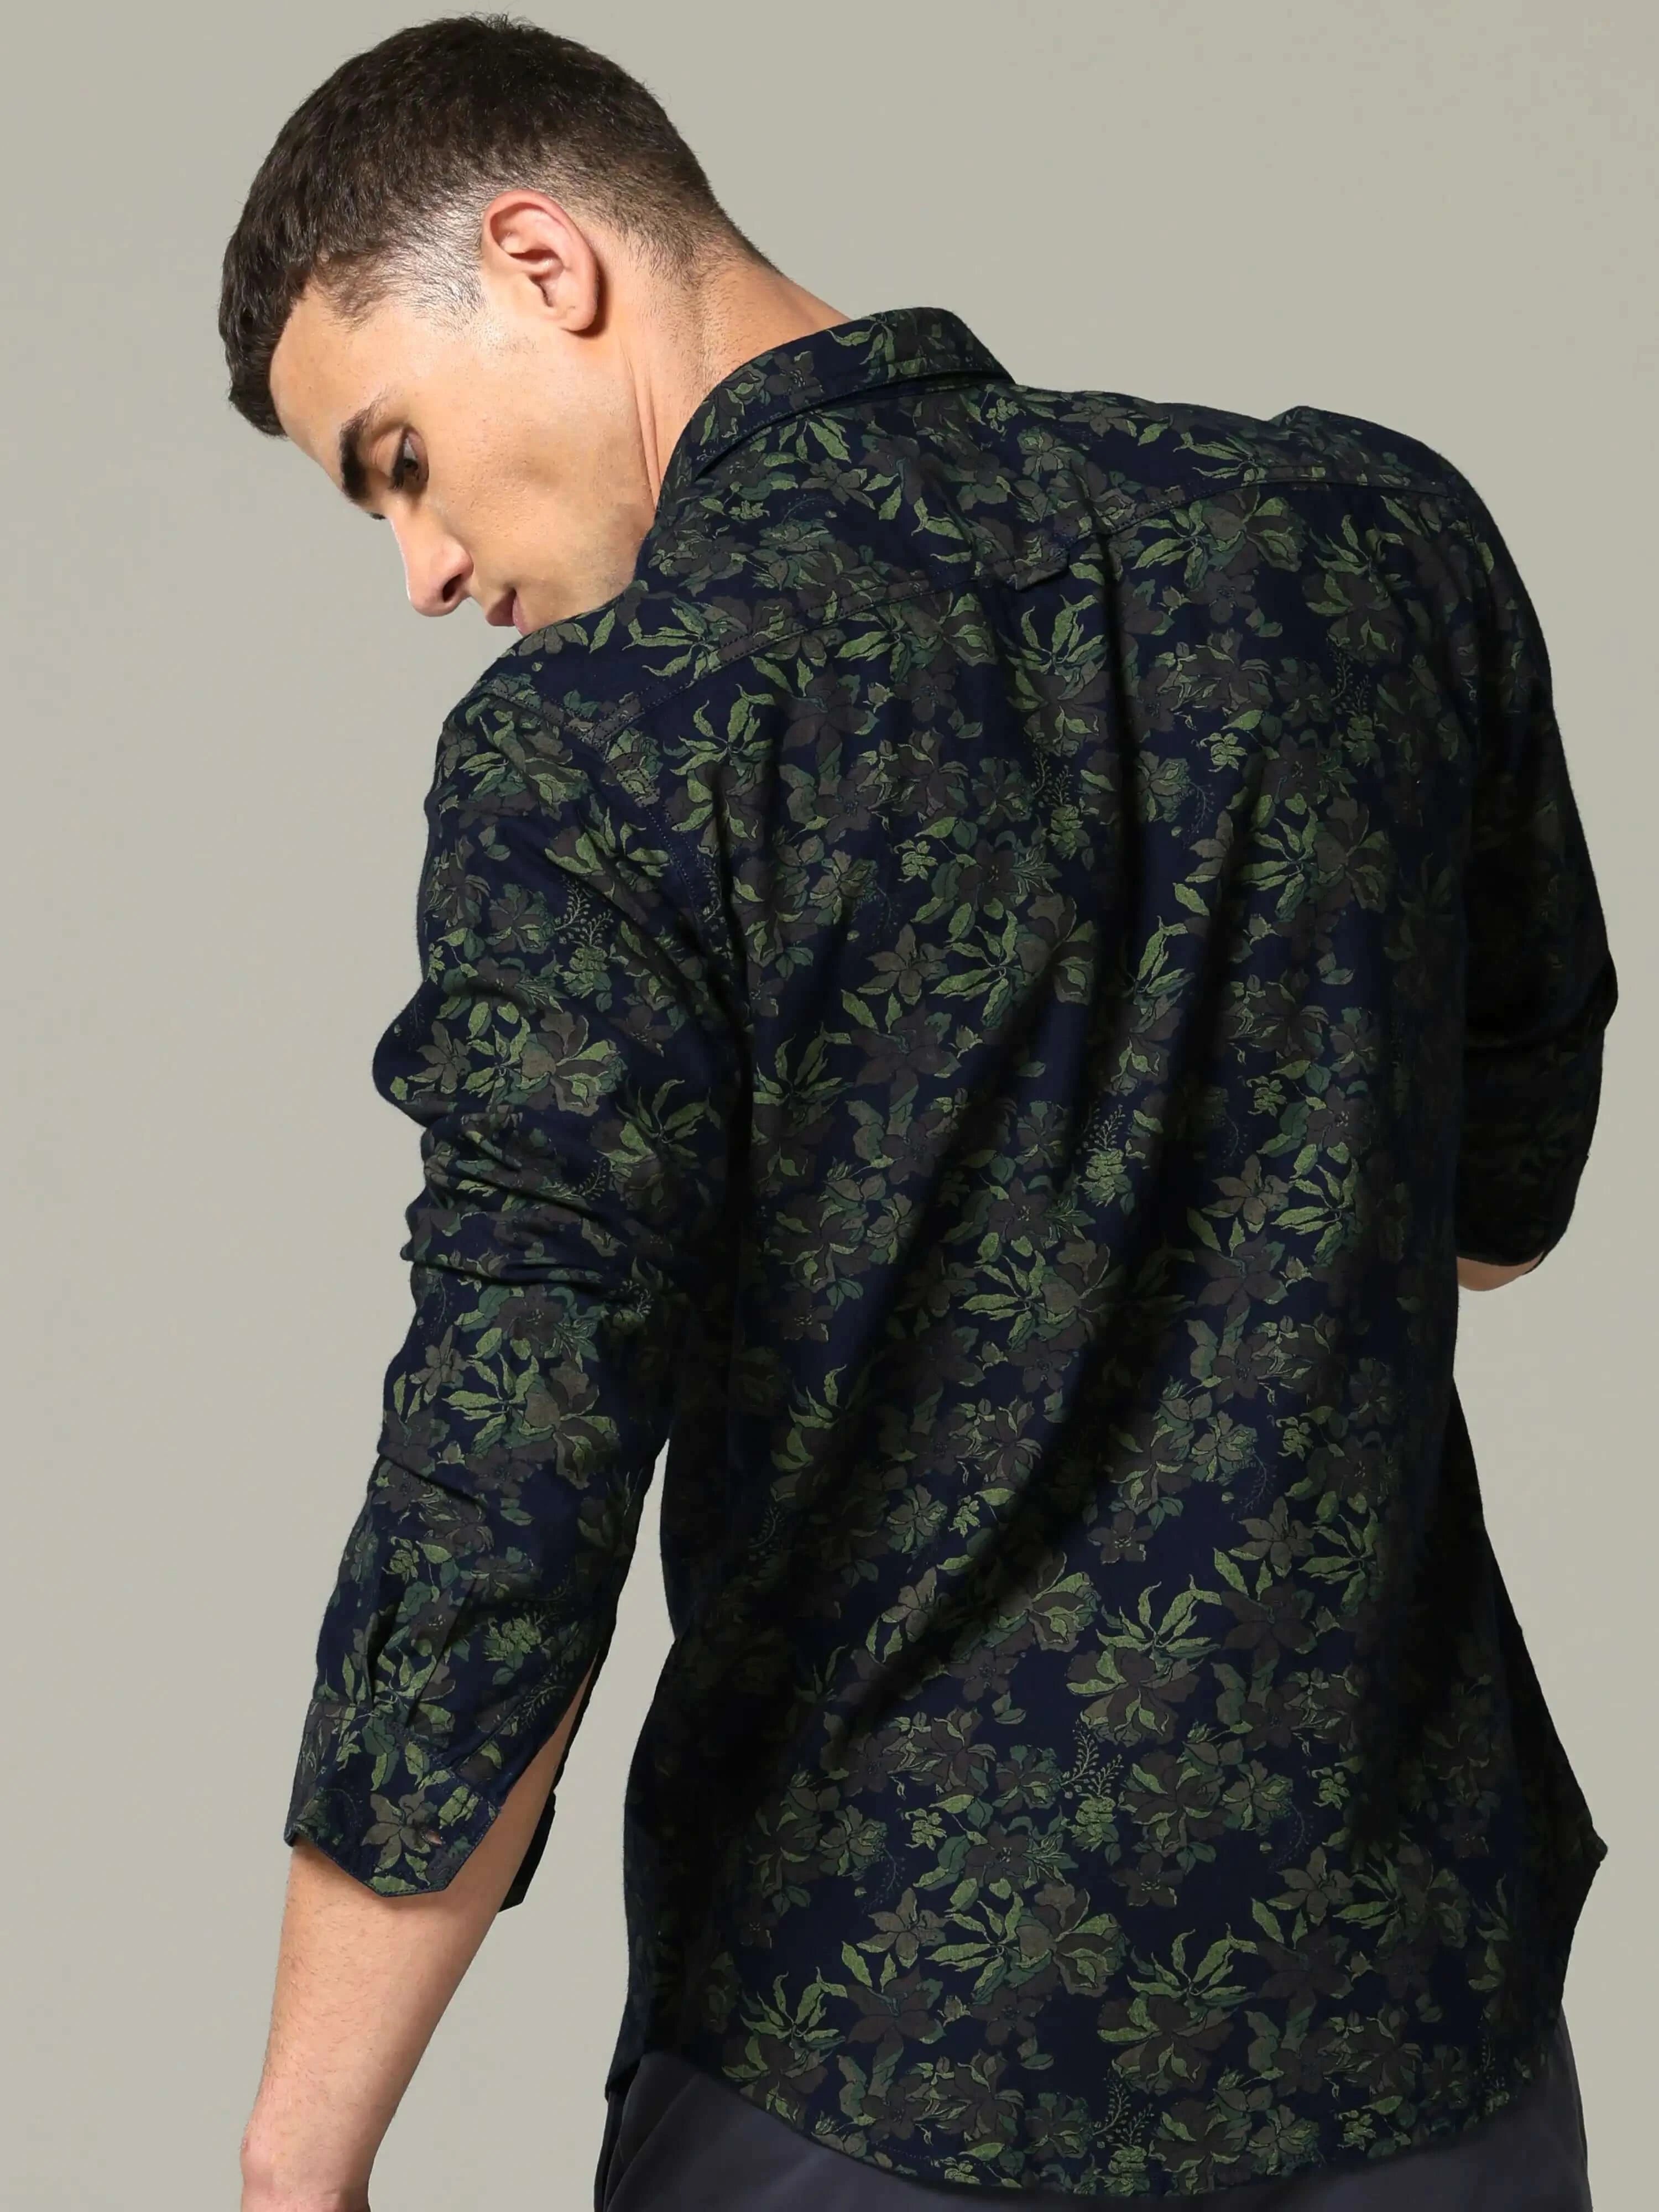 Indigo navy floral printed full sleeve casual shirt